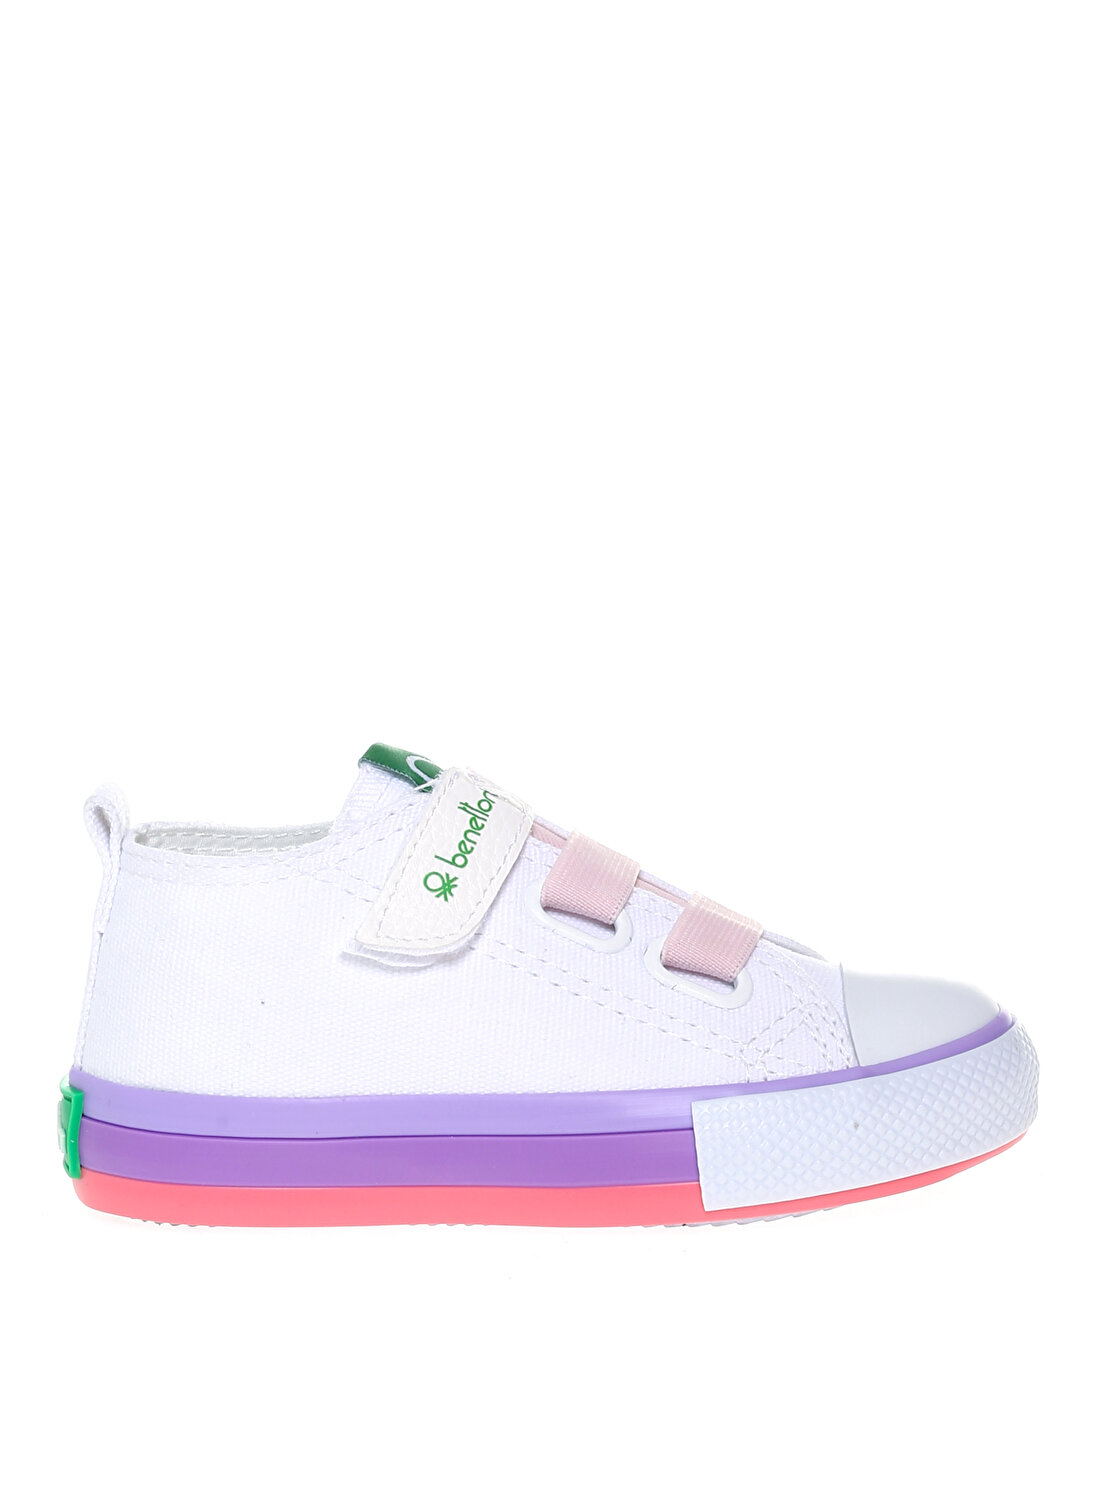 Benetton Beyaz - Pembe Kız Çocuk Keten Yürüyüş Ayakkabısı BN-30649 177